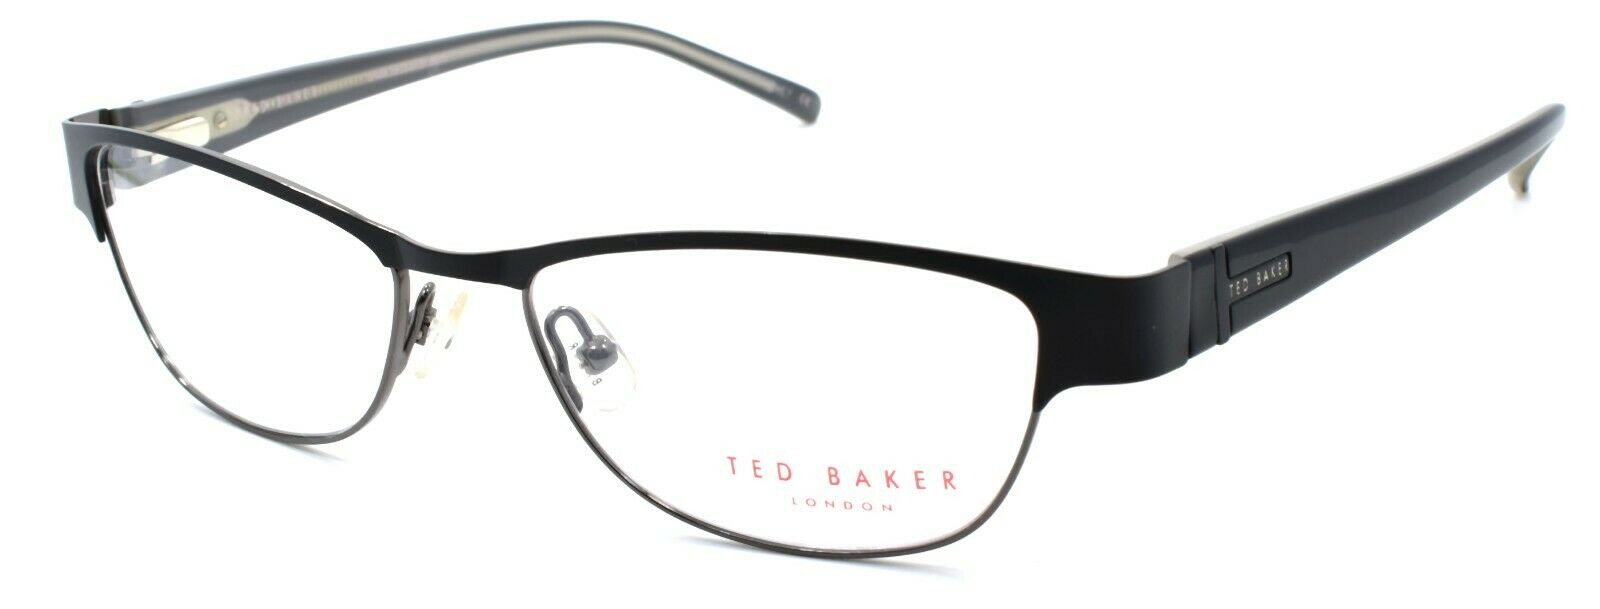 1-Ted Baker Mellor 2209 001 Women's Eyeglasses Frames 51-16-135 Black-4894327034611-IKSpecs